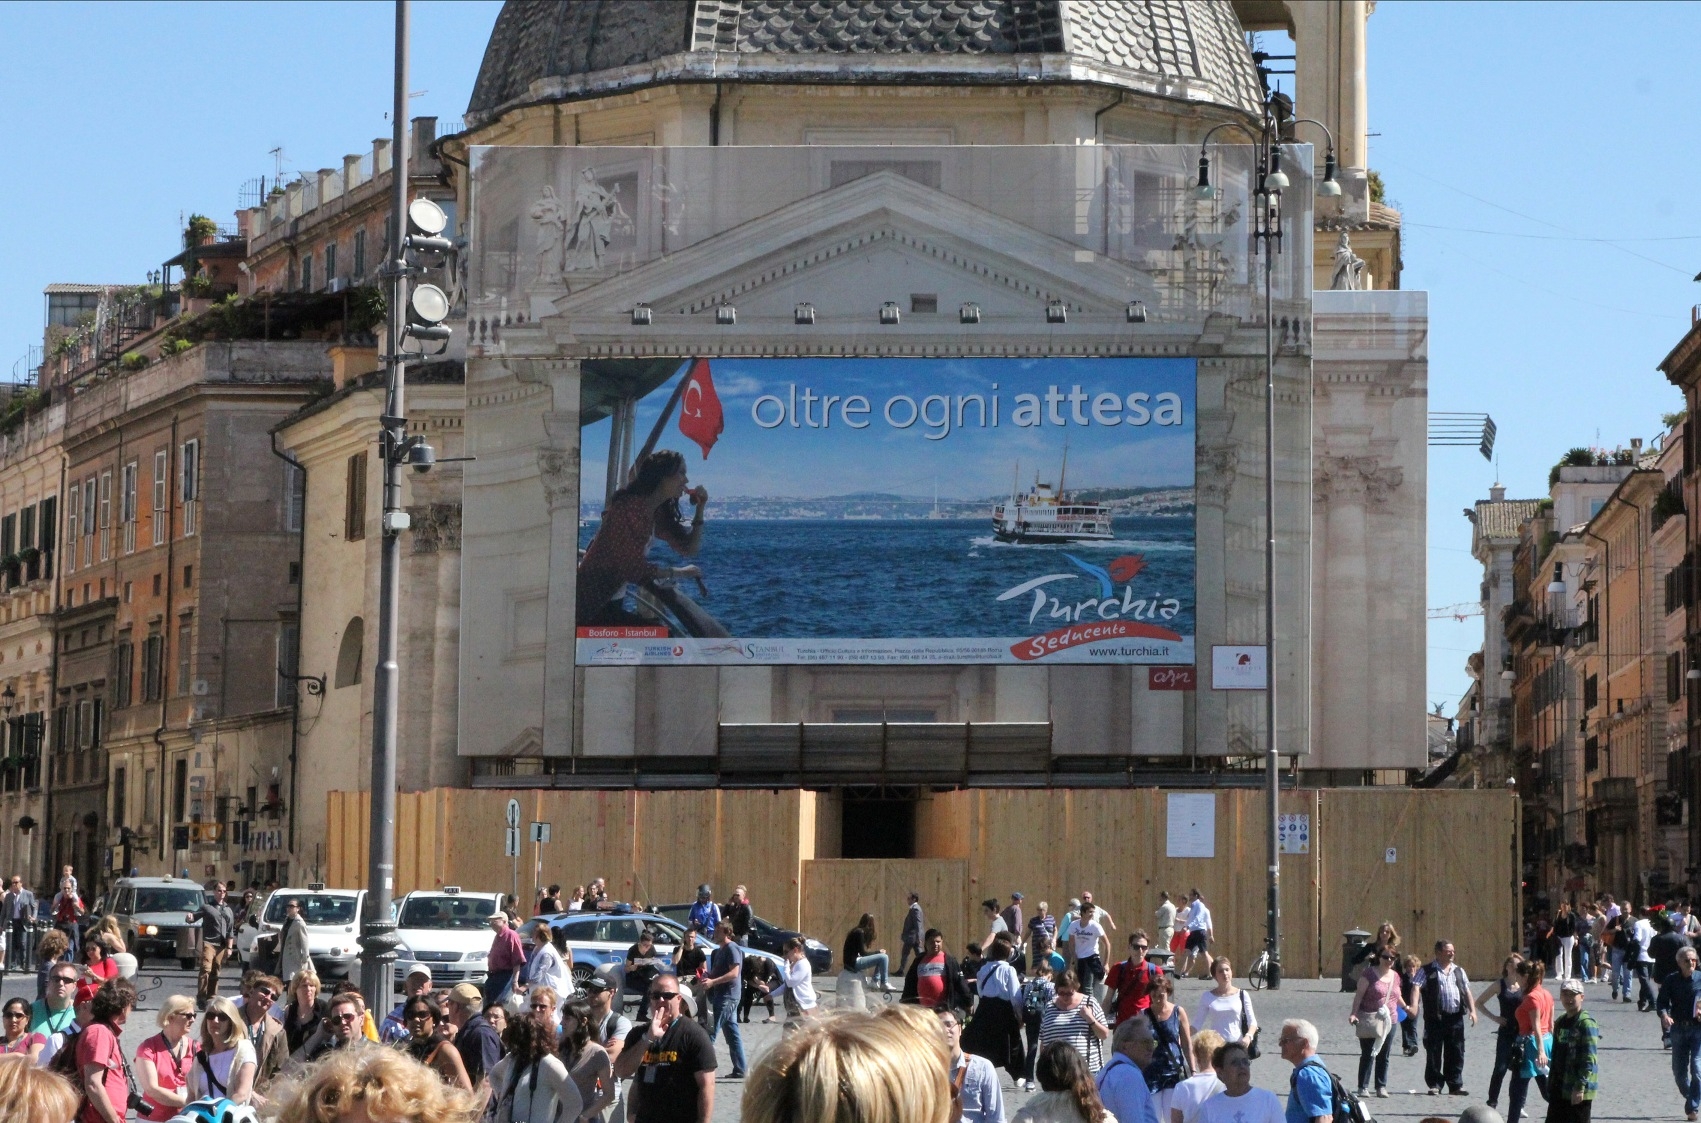 Turchia, la campagna promozionale arriva a Roma. Previste tappe in altre città italiane